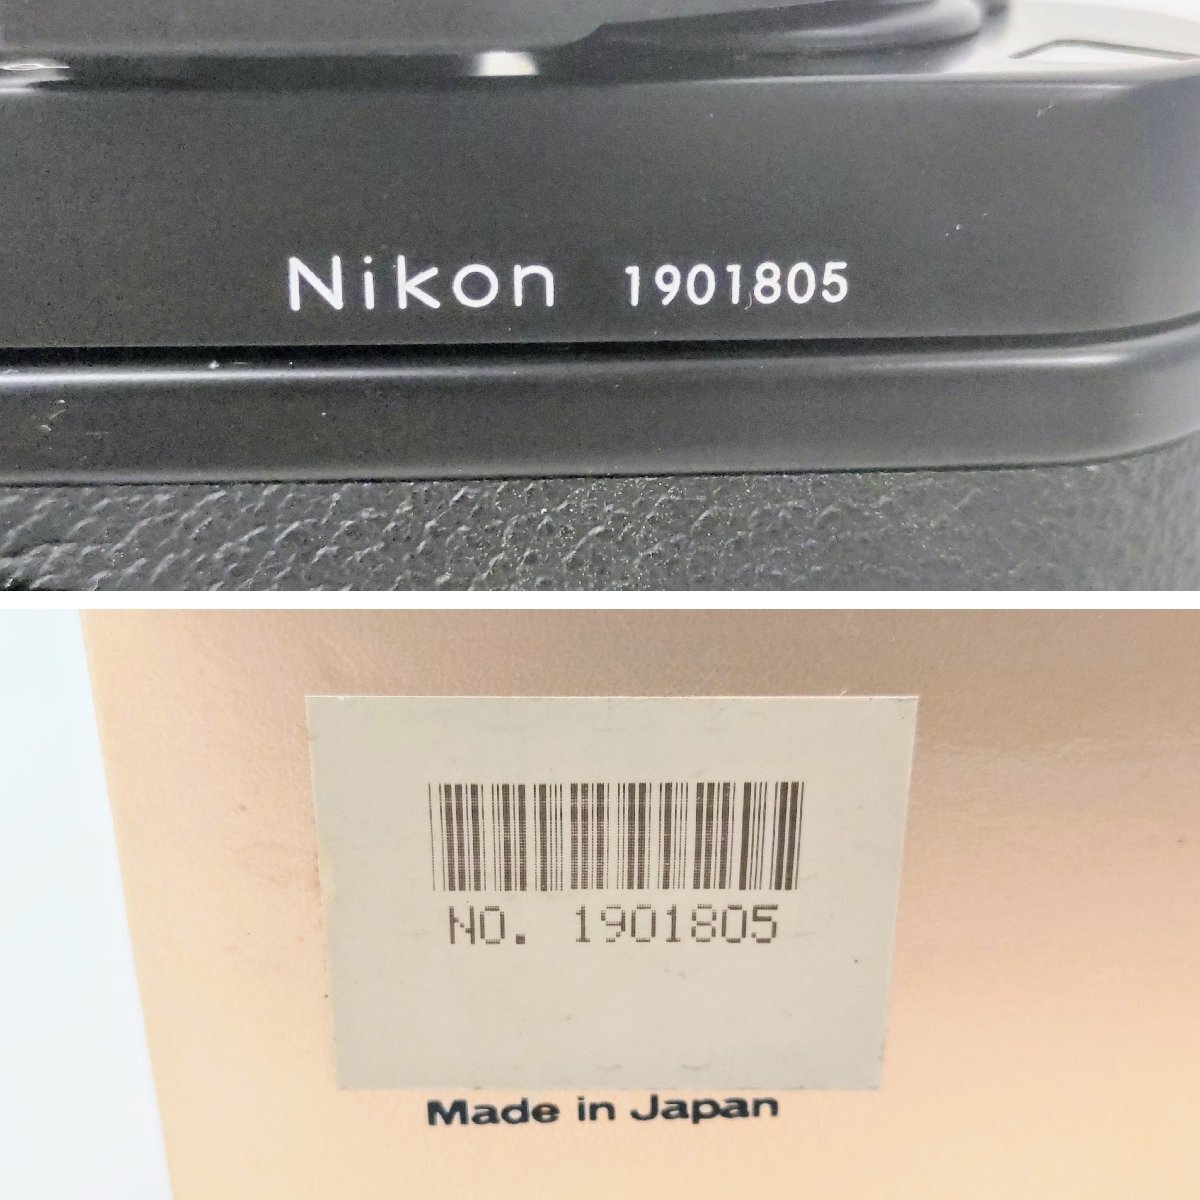 T1937 希少 レア 未使用品 Nikon ニコン F3 アイレベル 一眼レフ フィルムカメラ ボディ 元箱あり 1901805 シリアル一致品_画像5